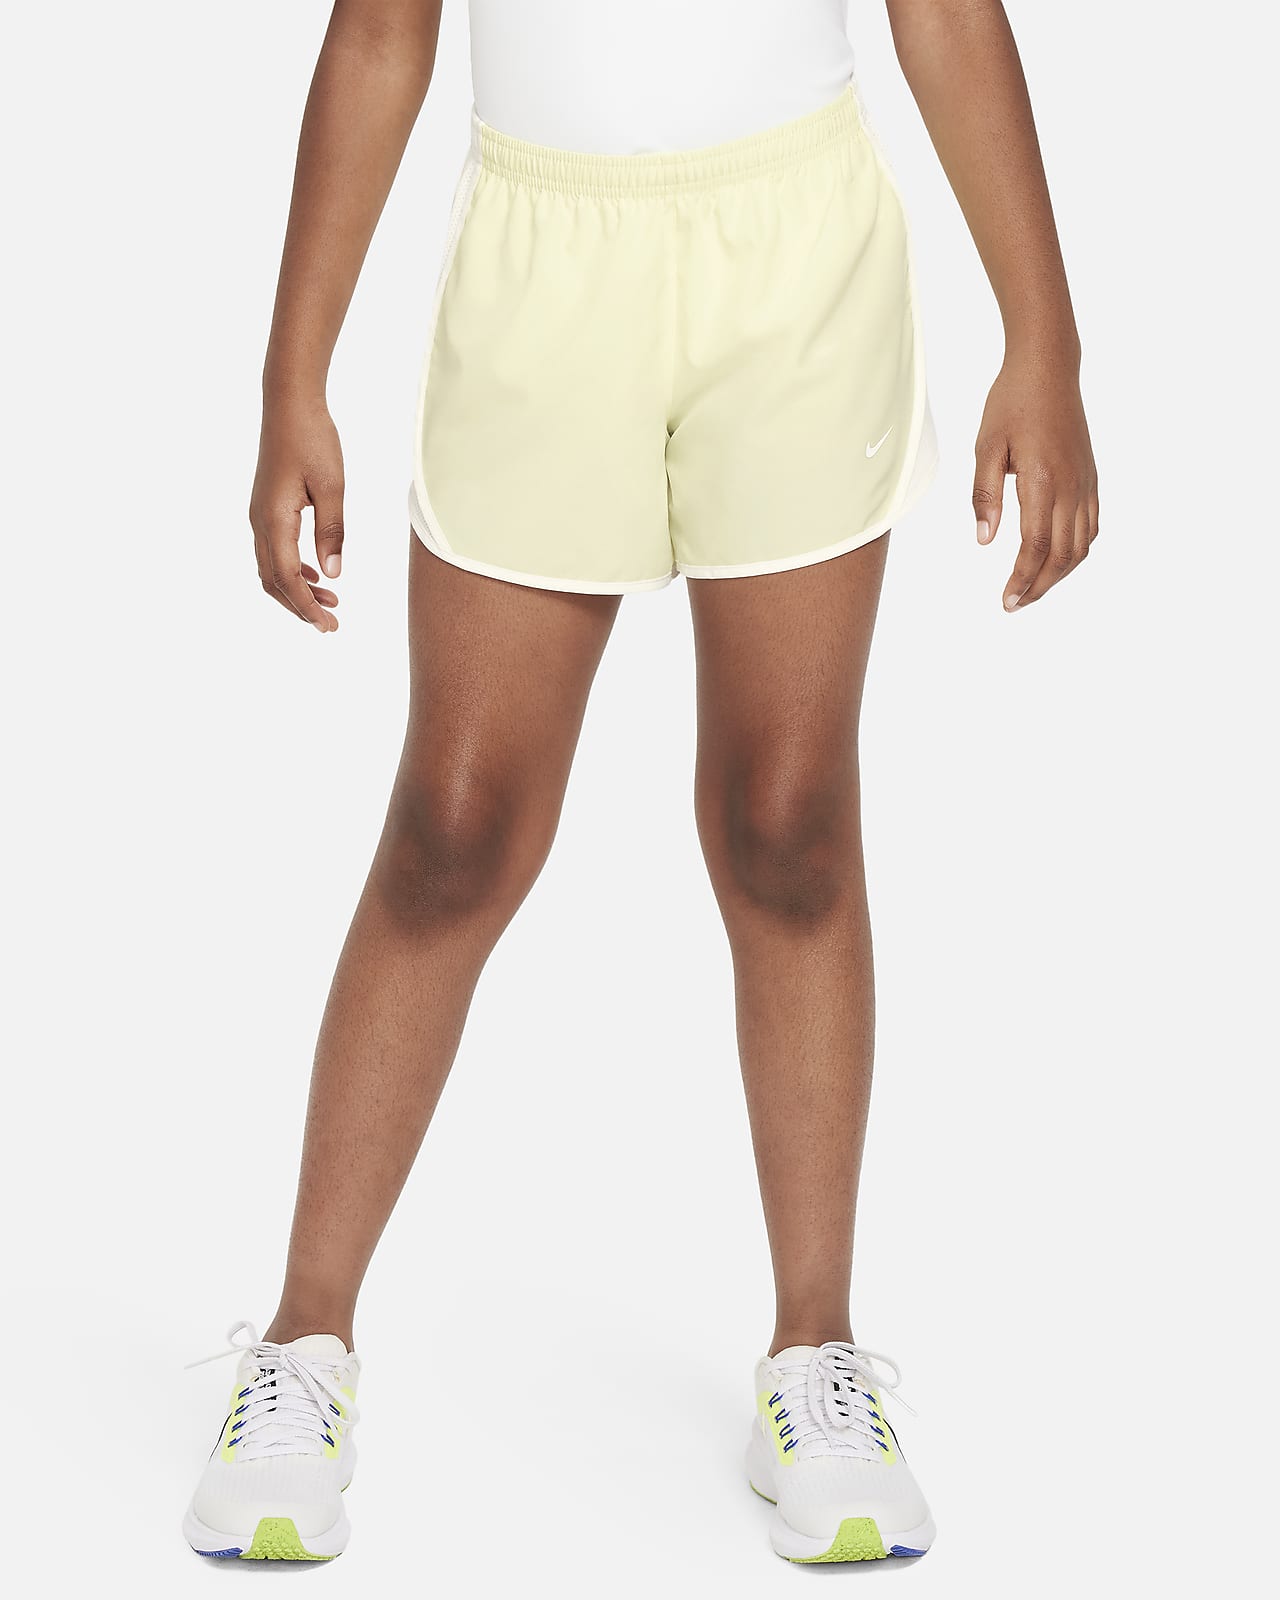 Nike girls Running Shorts